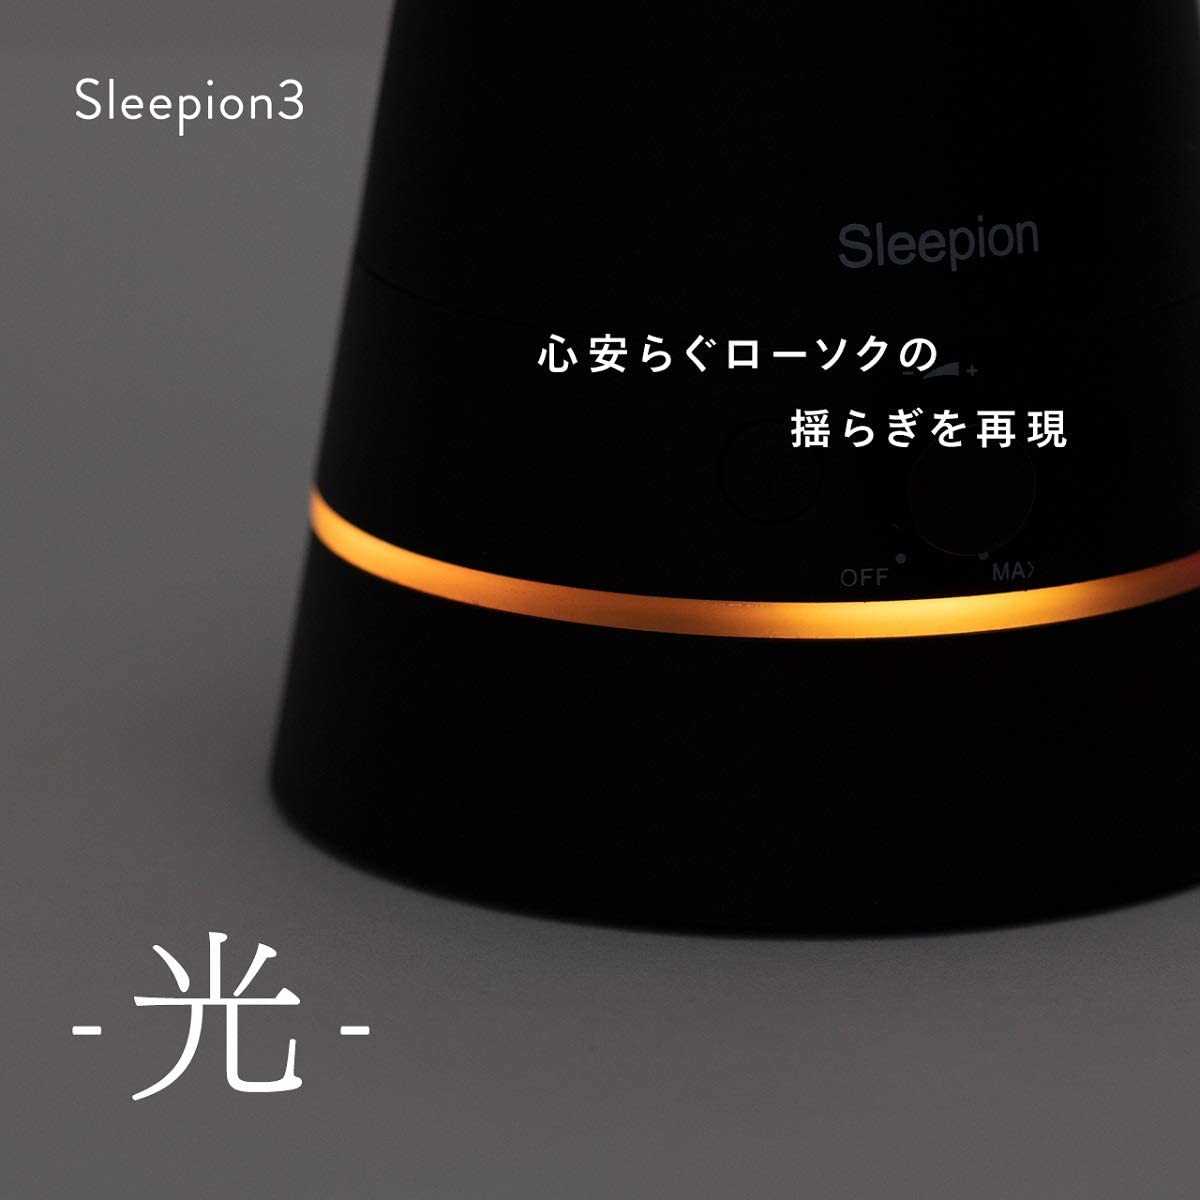 Sleepion3